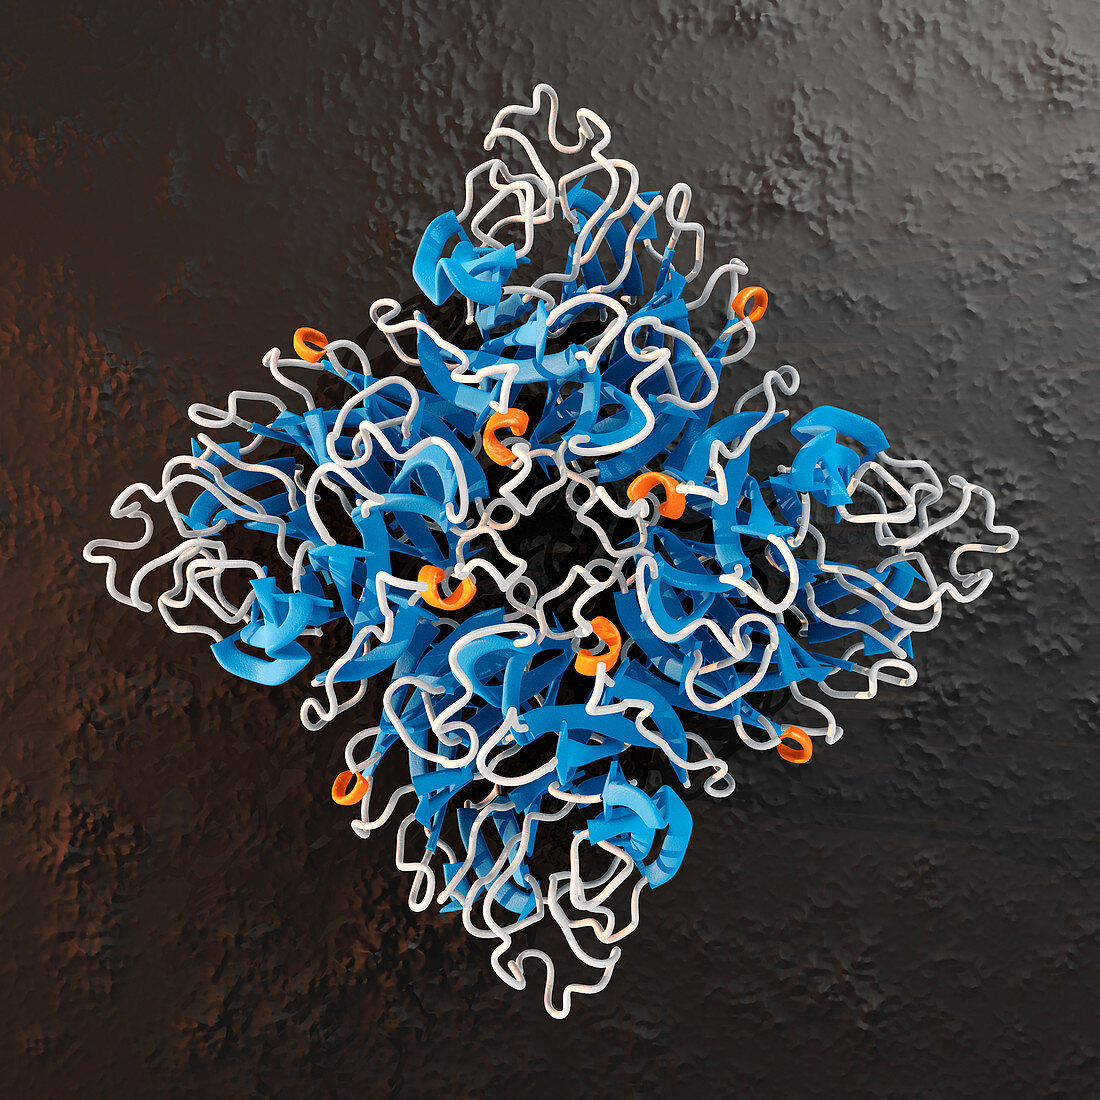 Neuraminidase influenza enzyme